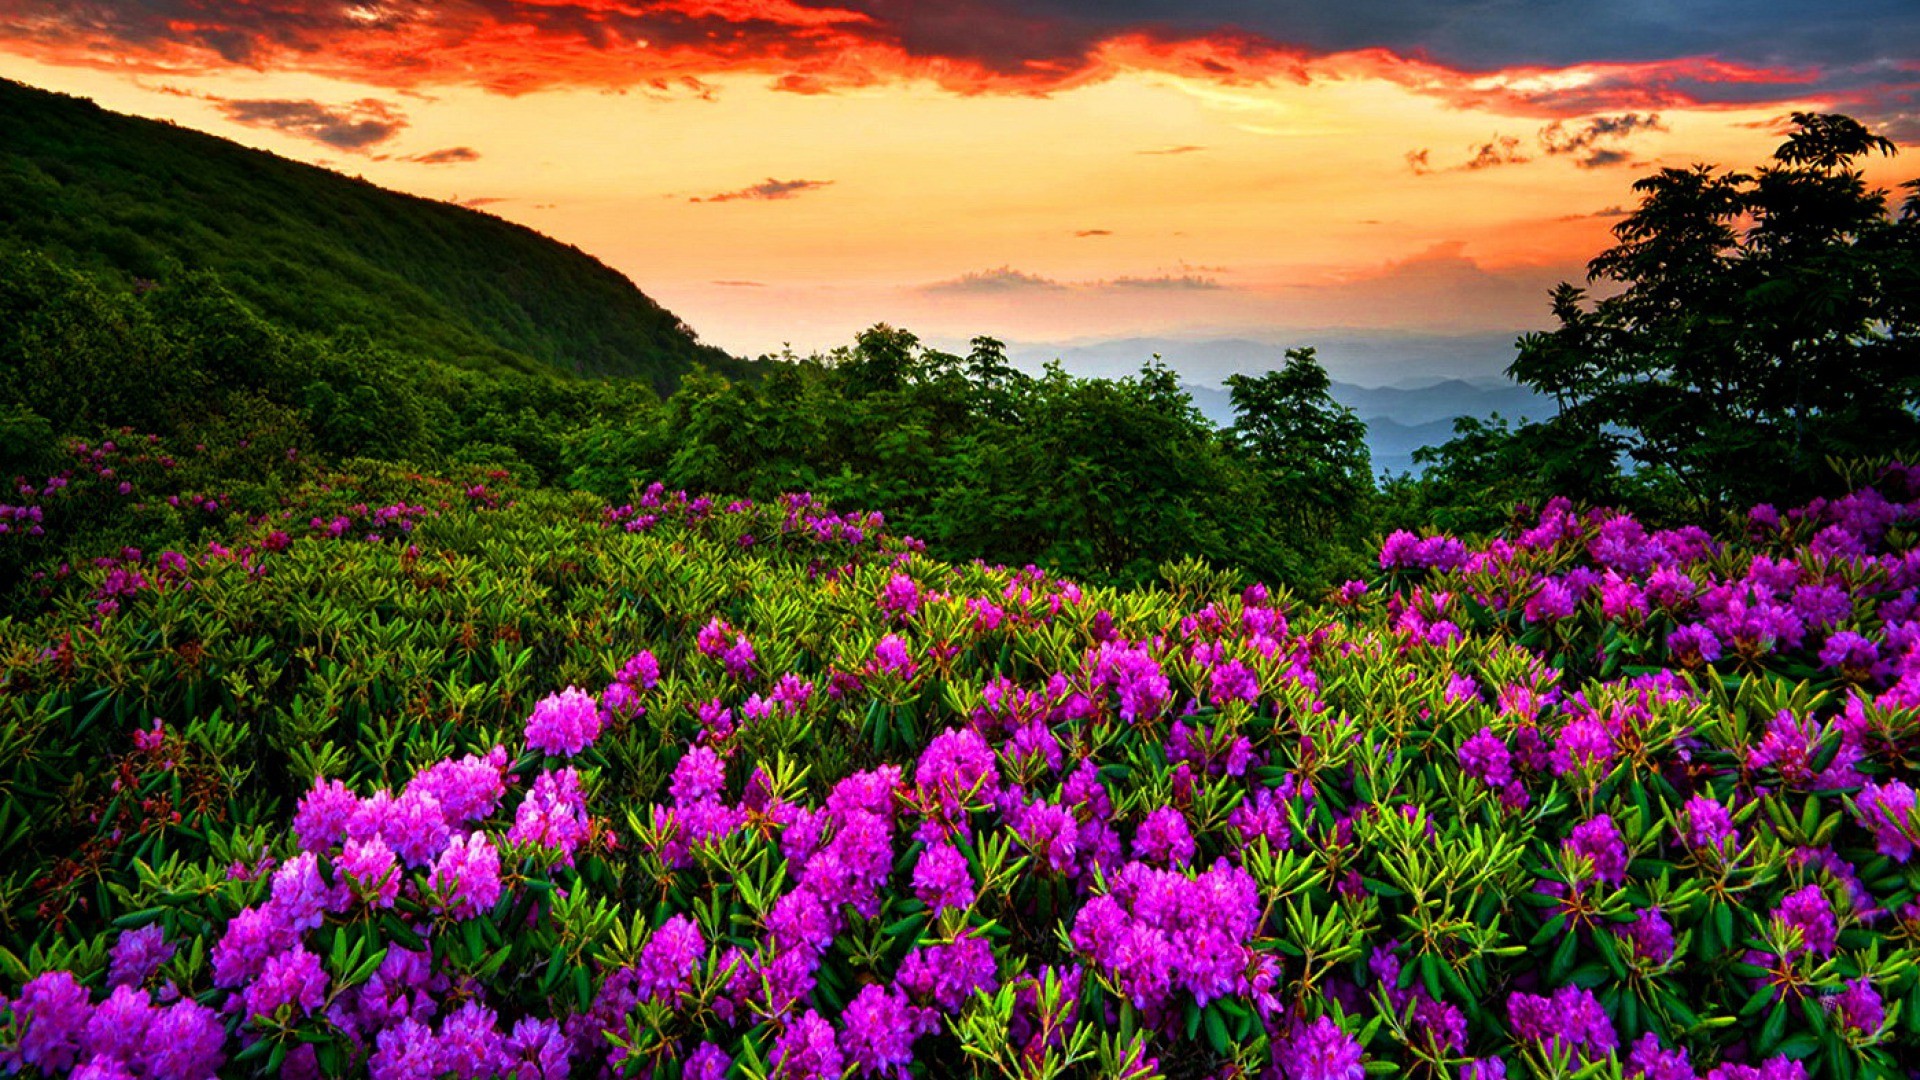 Hình nền Laptop Full HD đồi núi trải đầy những bông hoa màu tím cực đẹp